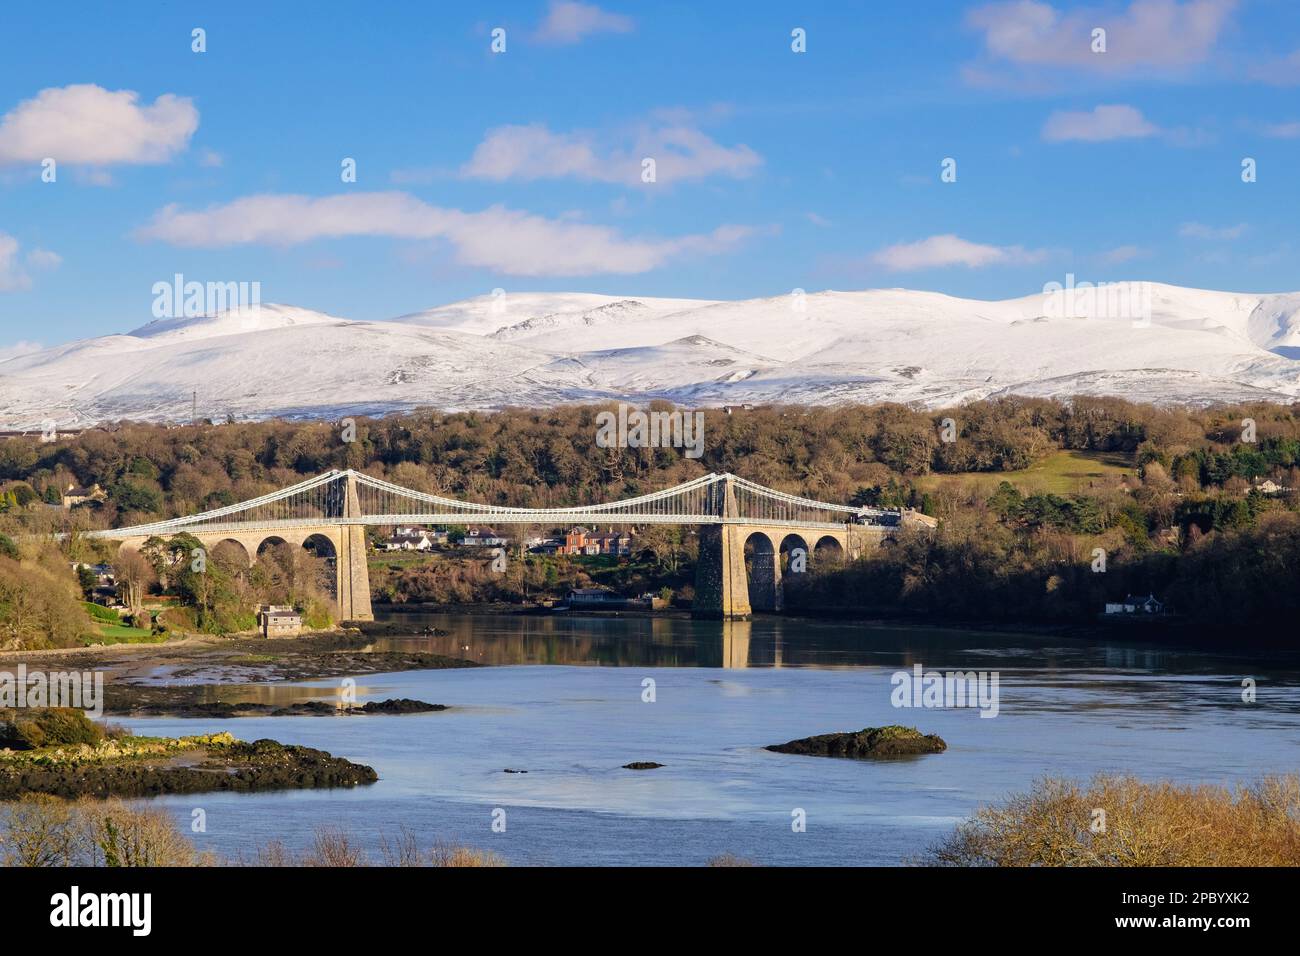 Malerischer Blick auf die Menai-Hängebrücke, die die Menai-Straße überquert, mit Schnee auf den Bergen im Winter. Menai Bridge (Porthaethwy), Isle of Anglesey, Wales, Vereinigtes Königreich Stockfoto